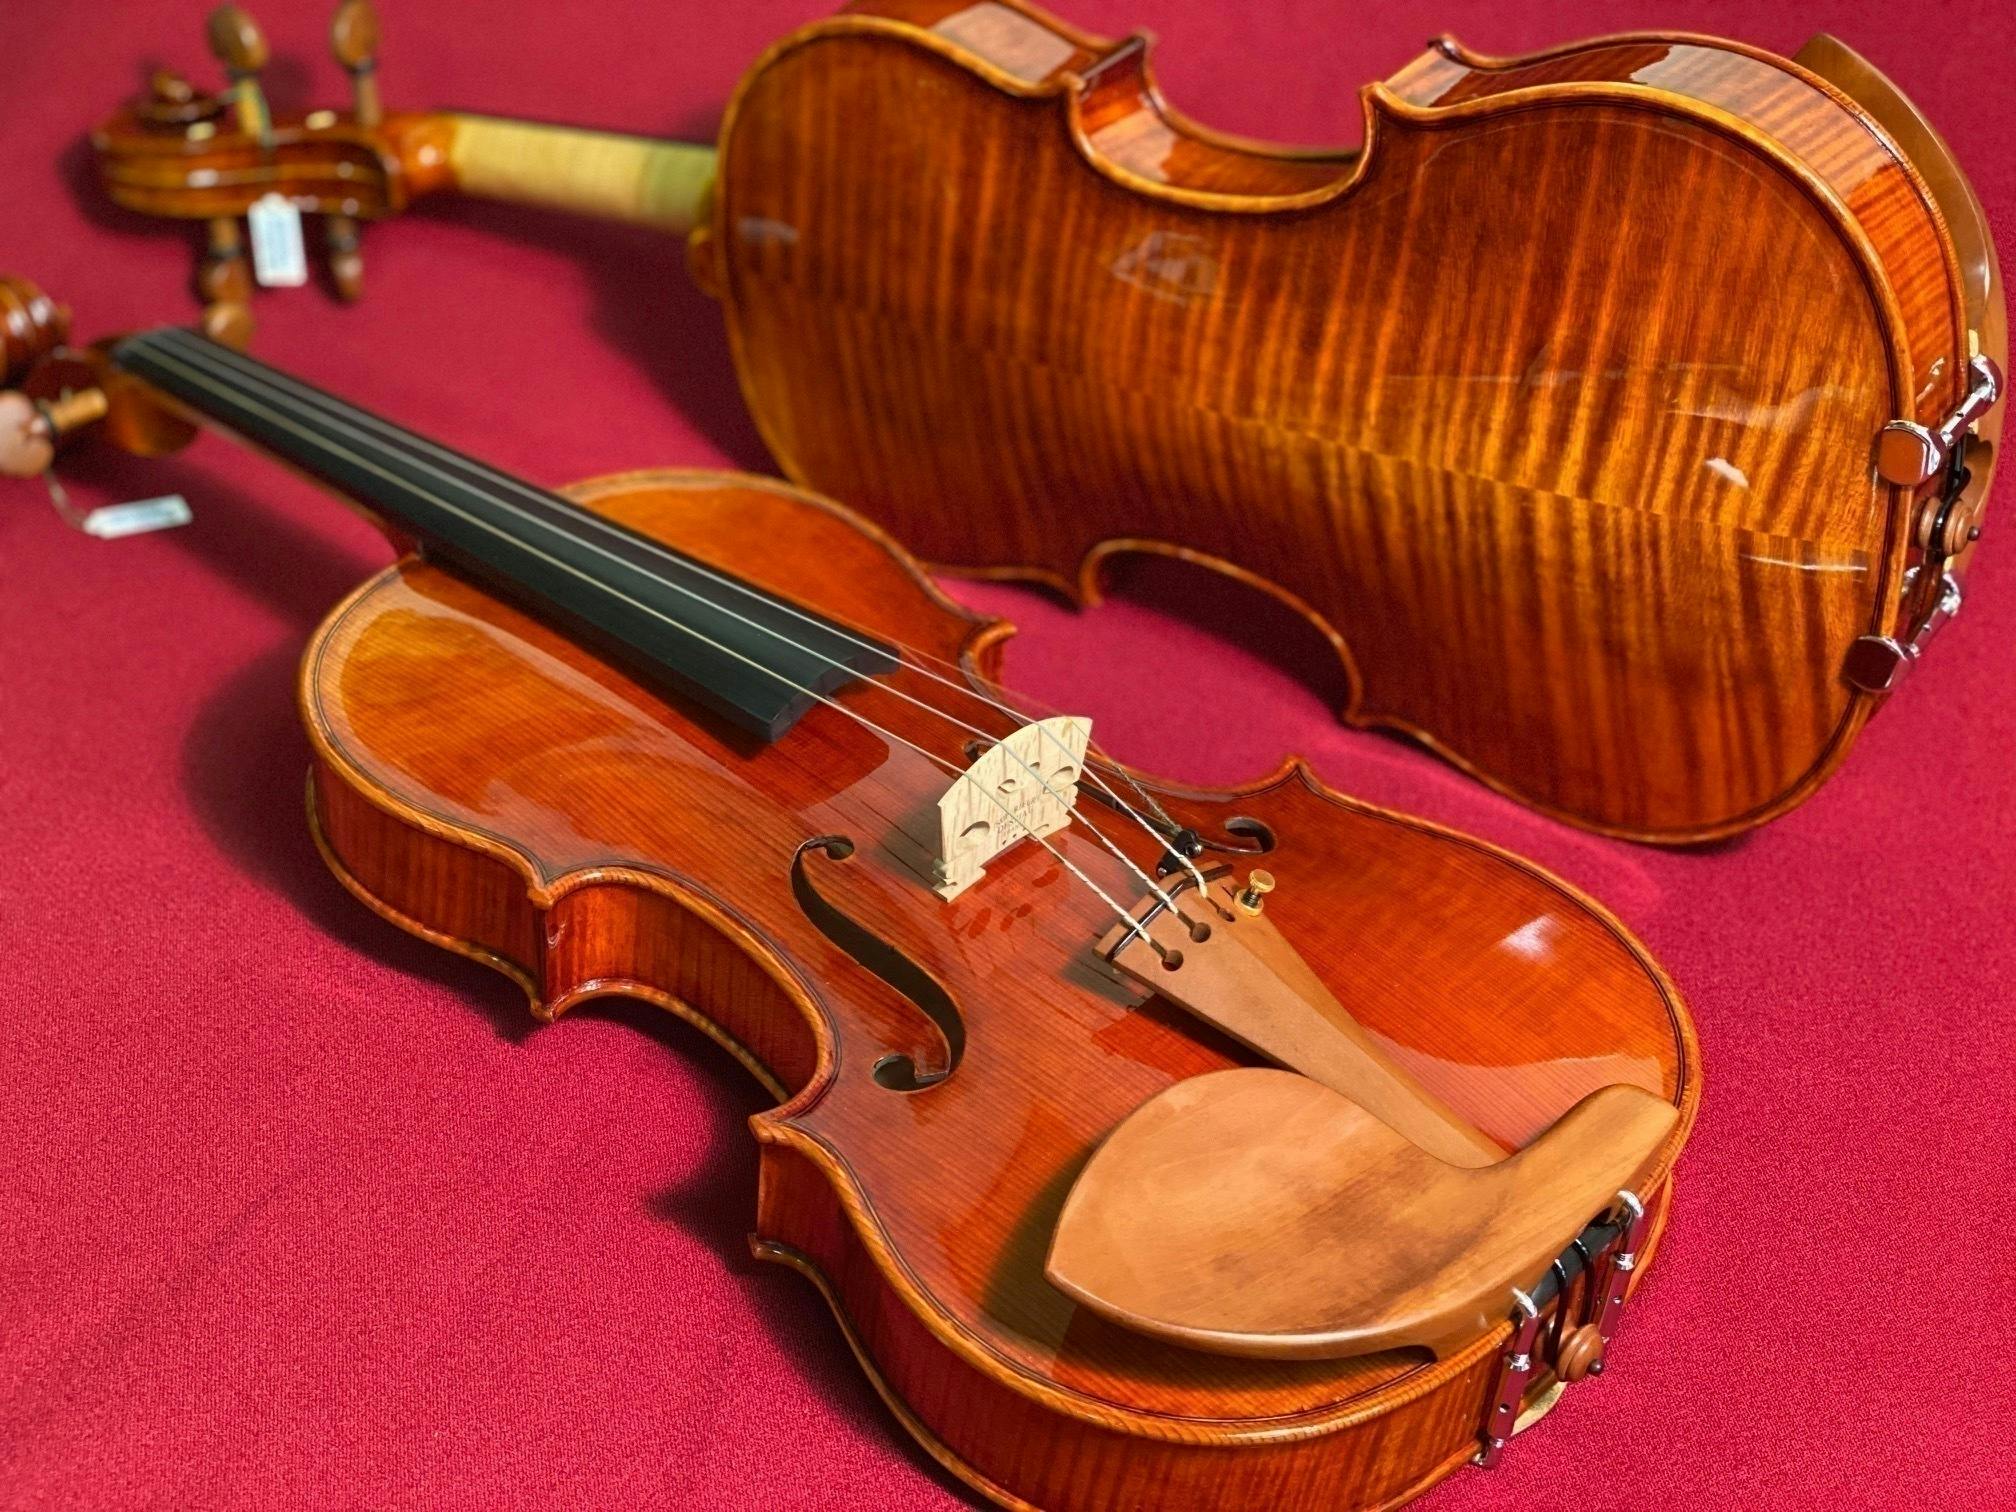 日本のバイオリン作りの文化を残したい～ 世界一の弦楽器メーカーを目指します CAMPFIRE (キャンプファイヤー)